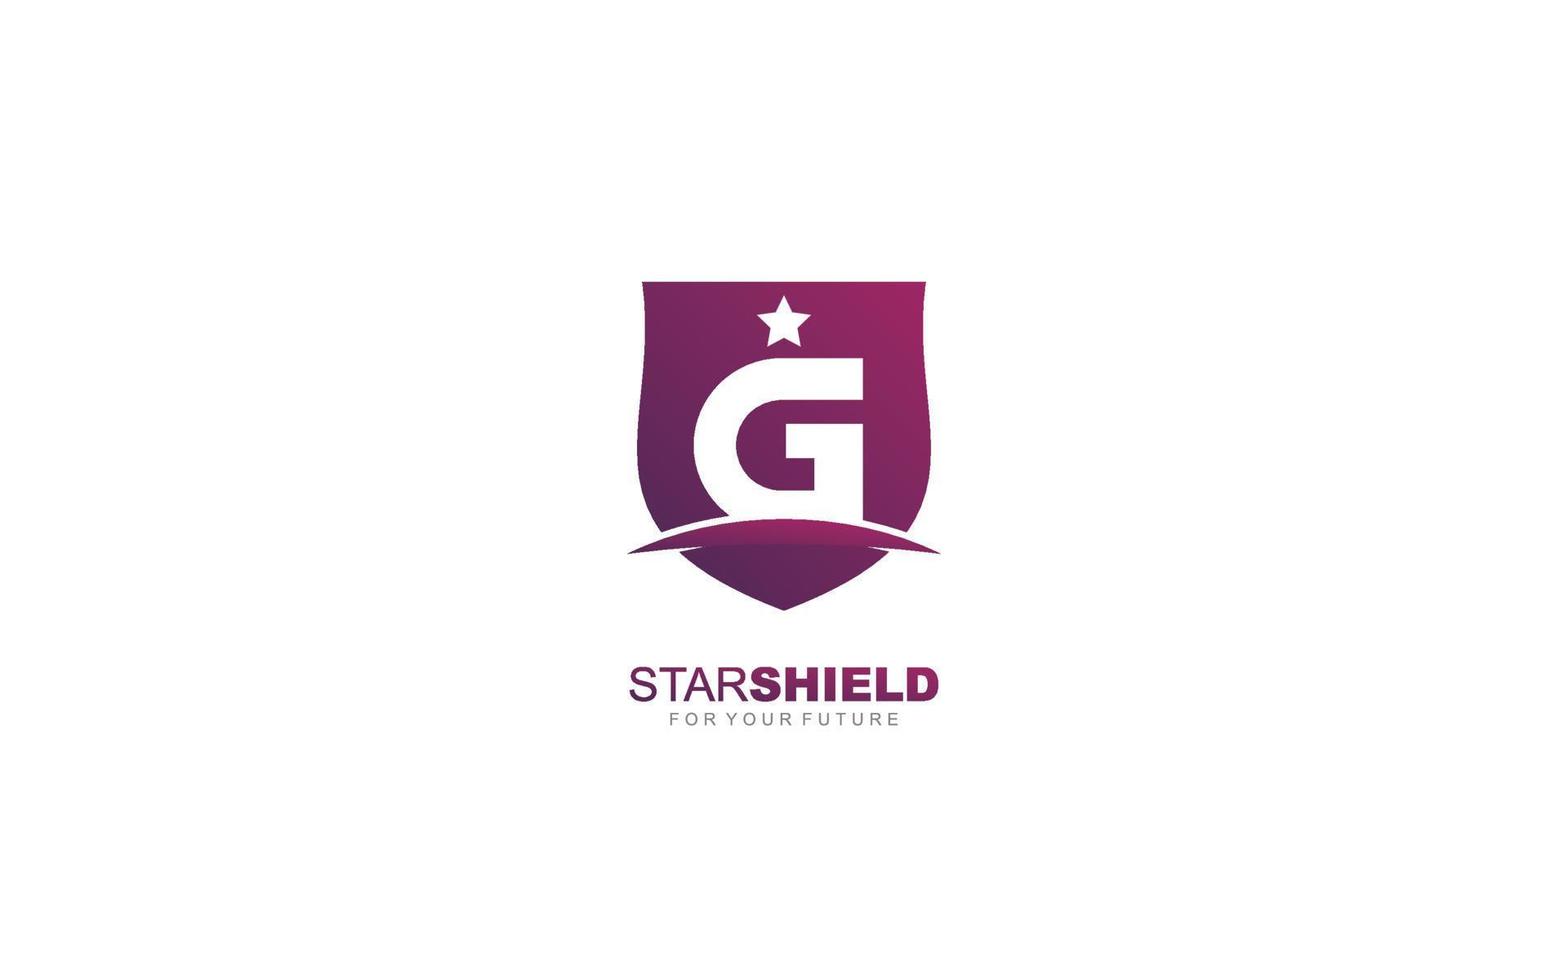 escudo del logotipo g para la marca de la empresa. ilustración de vector de plantilla de seguridad para su marca.